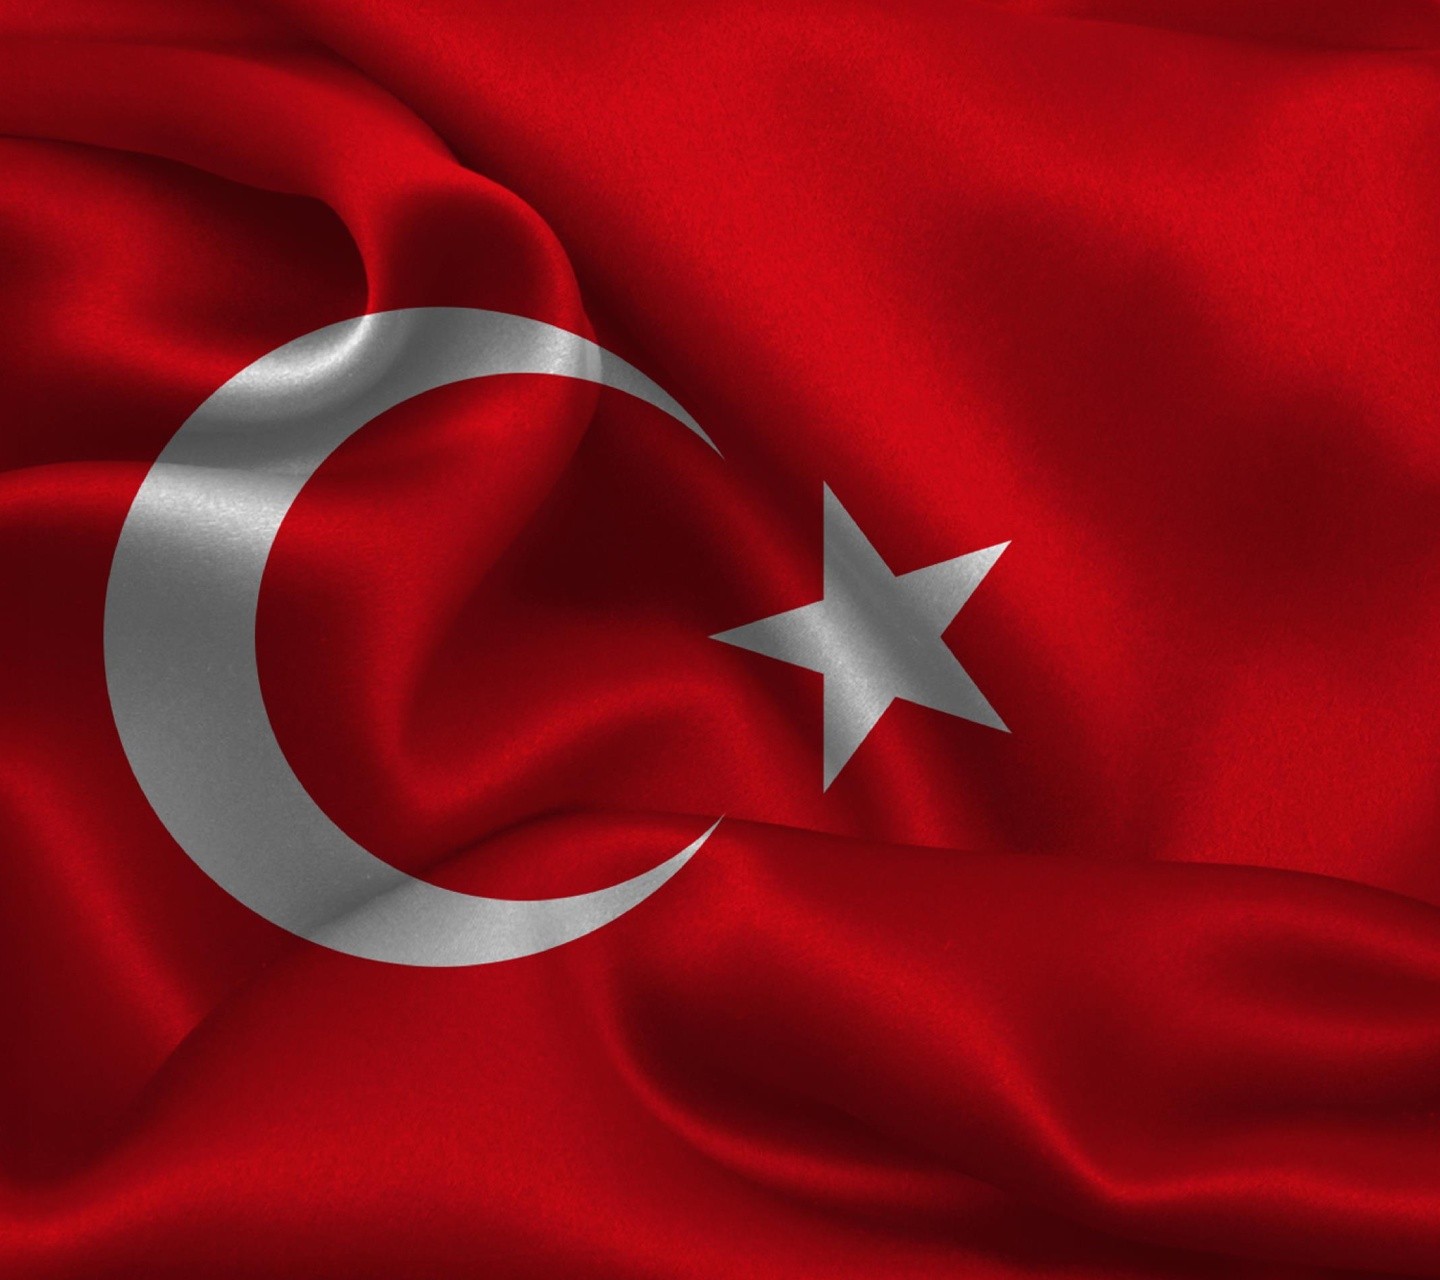 General 1440x1280 Muslim Turkey flag red